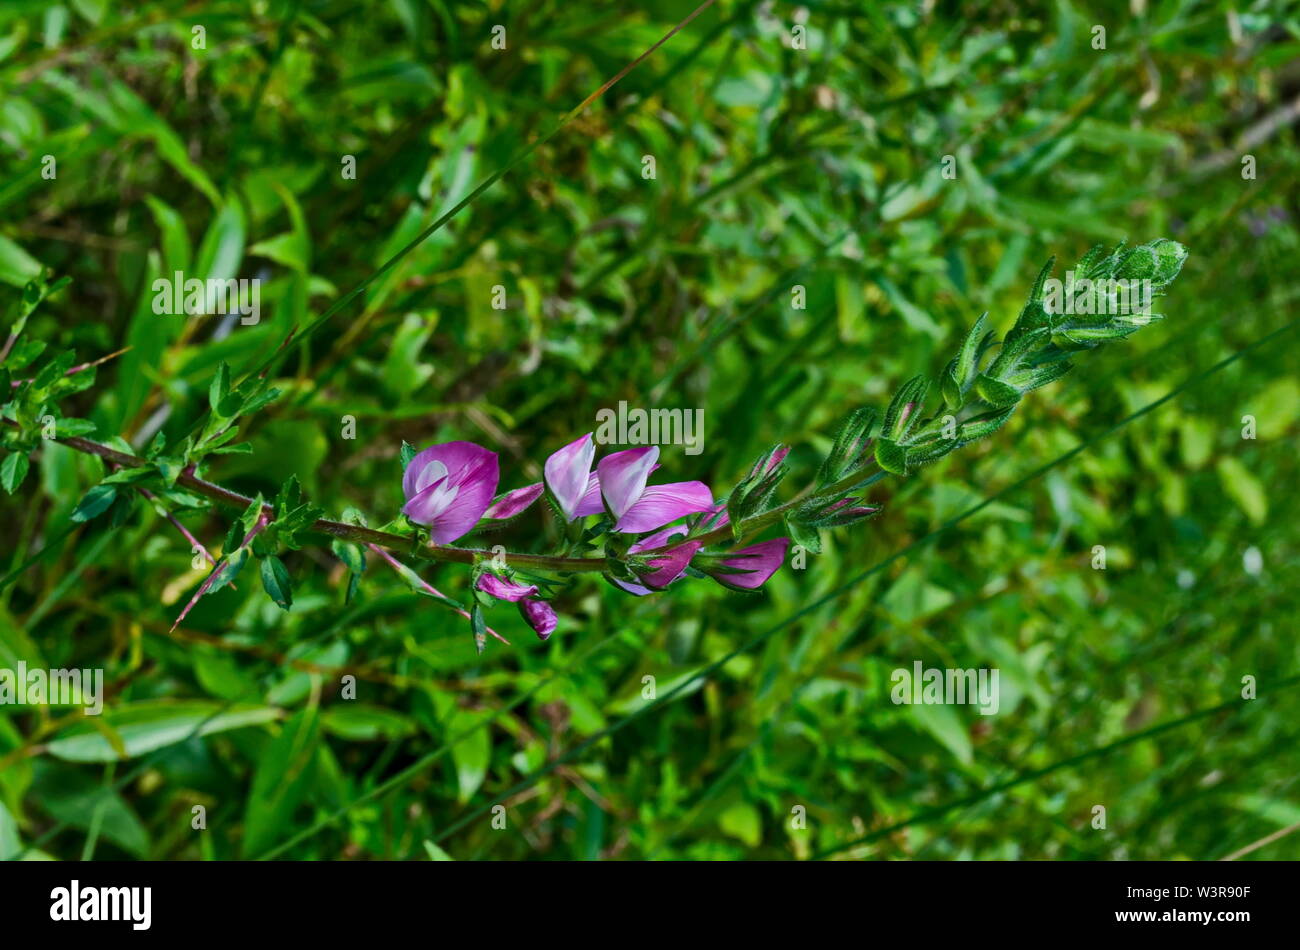 Blossom of wild pea pink  or Lathyrus tuberosus in the field, Jeleznitsa, Vitosha mountain, Bulgaria Stock Photo